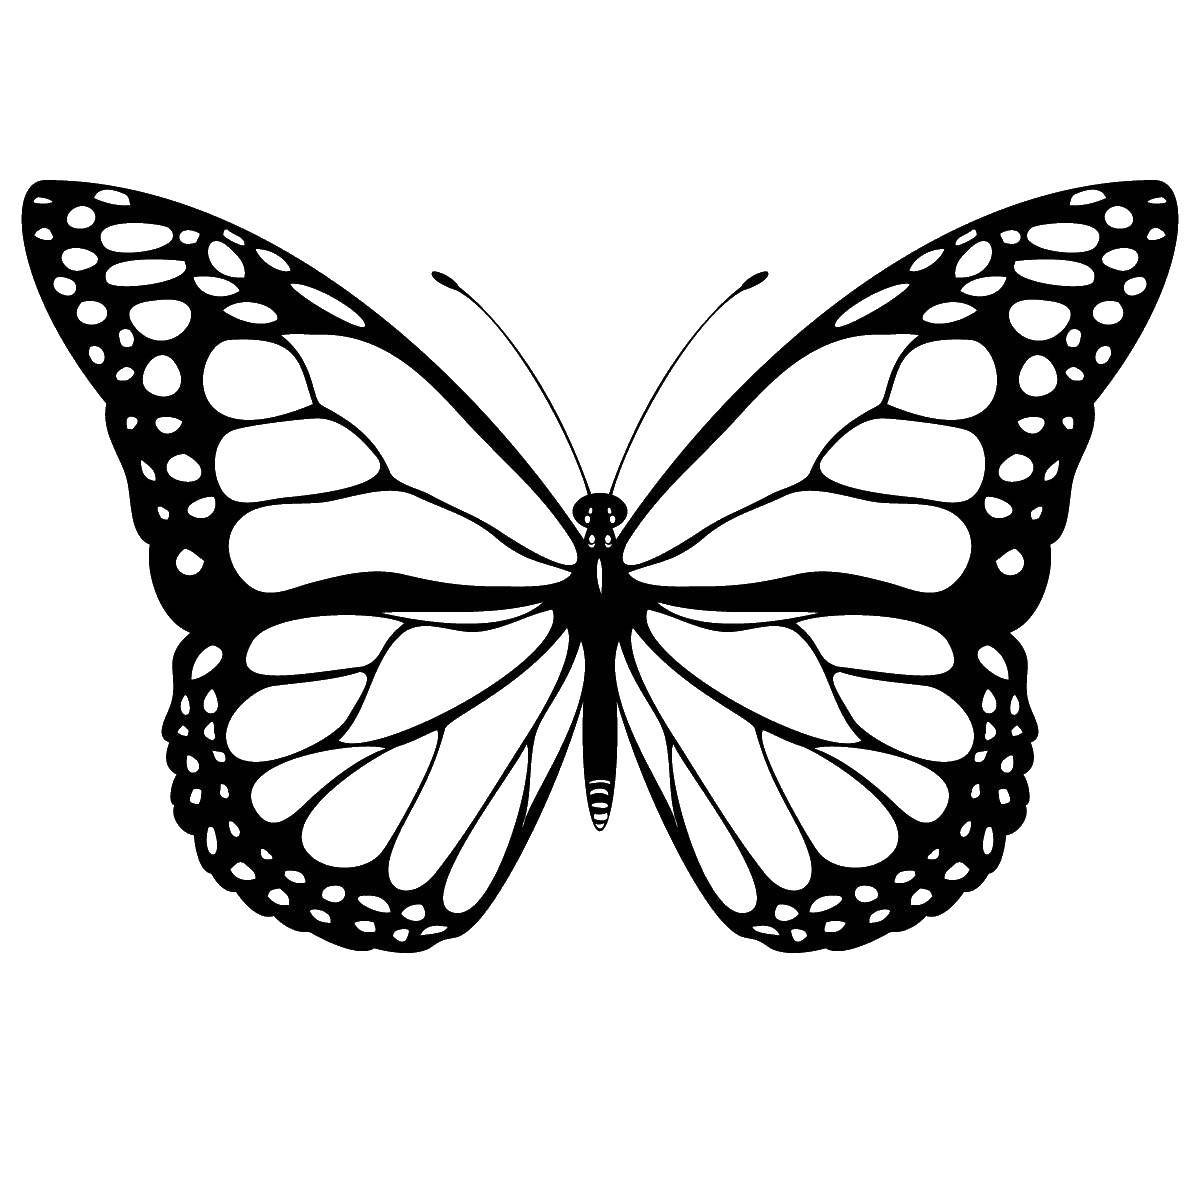 Название: Раскраска Бабочка с узорчатыми крыльями. Категория: Бабочка. Теги: насекомые, бабочки, узоры.